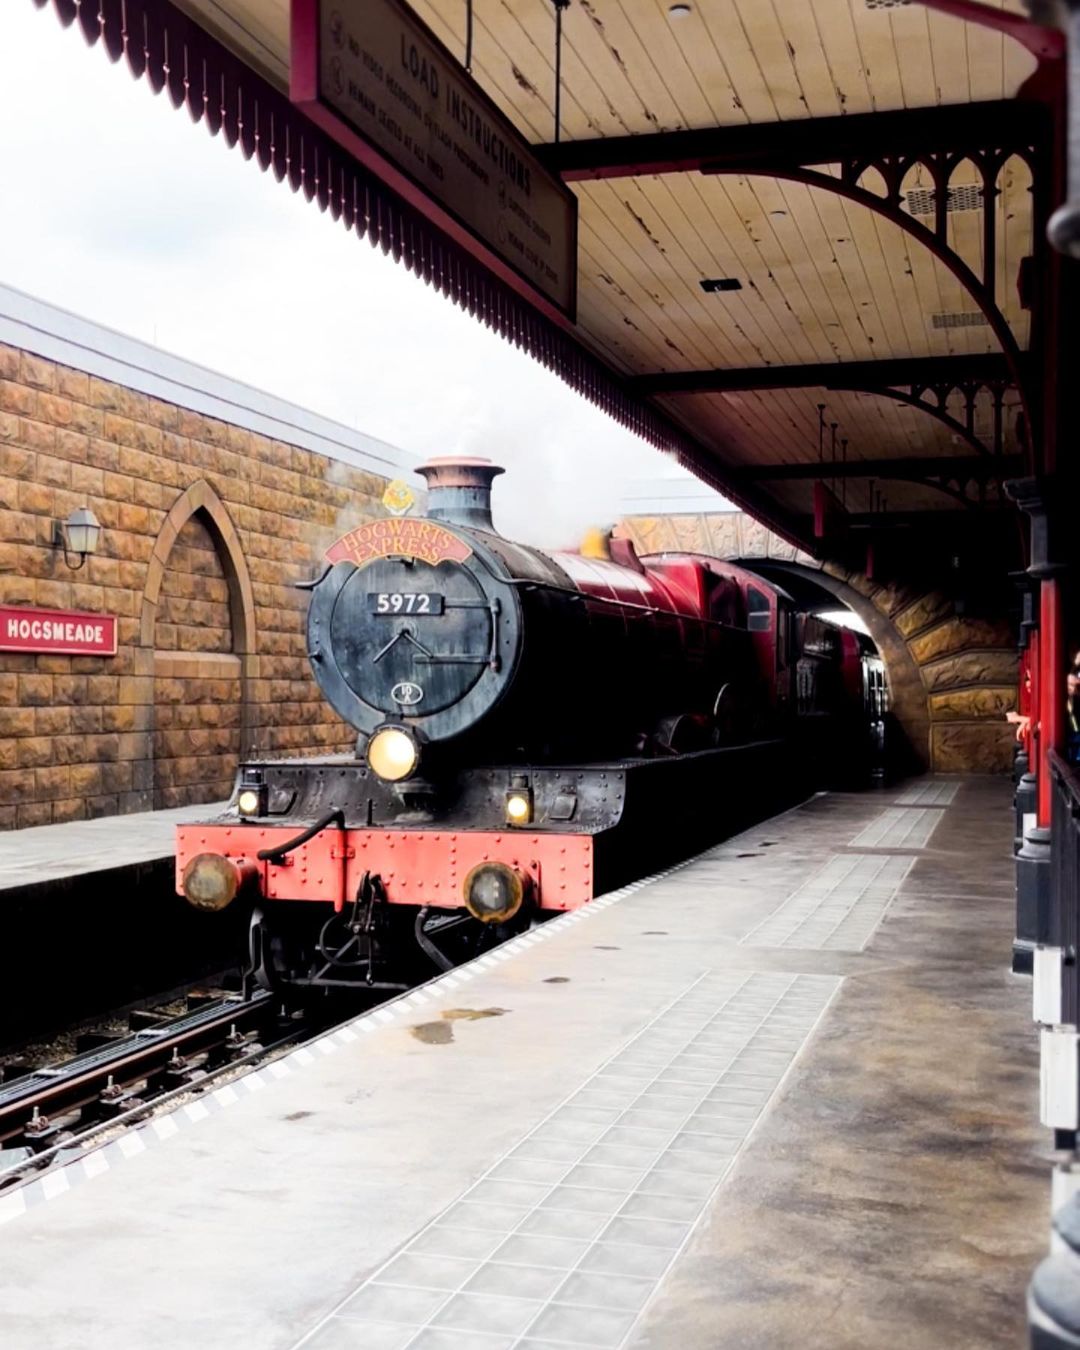 Estação de Hogsmeade no Expresso de Hogwarts